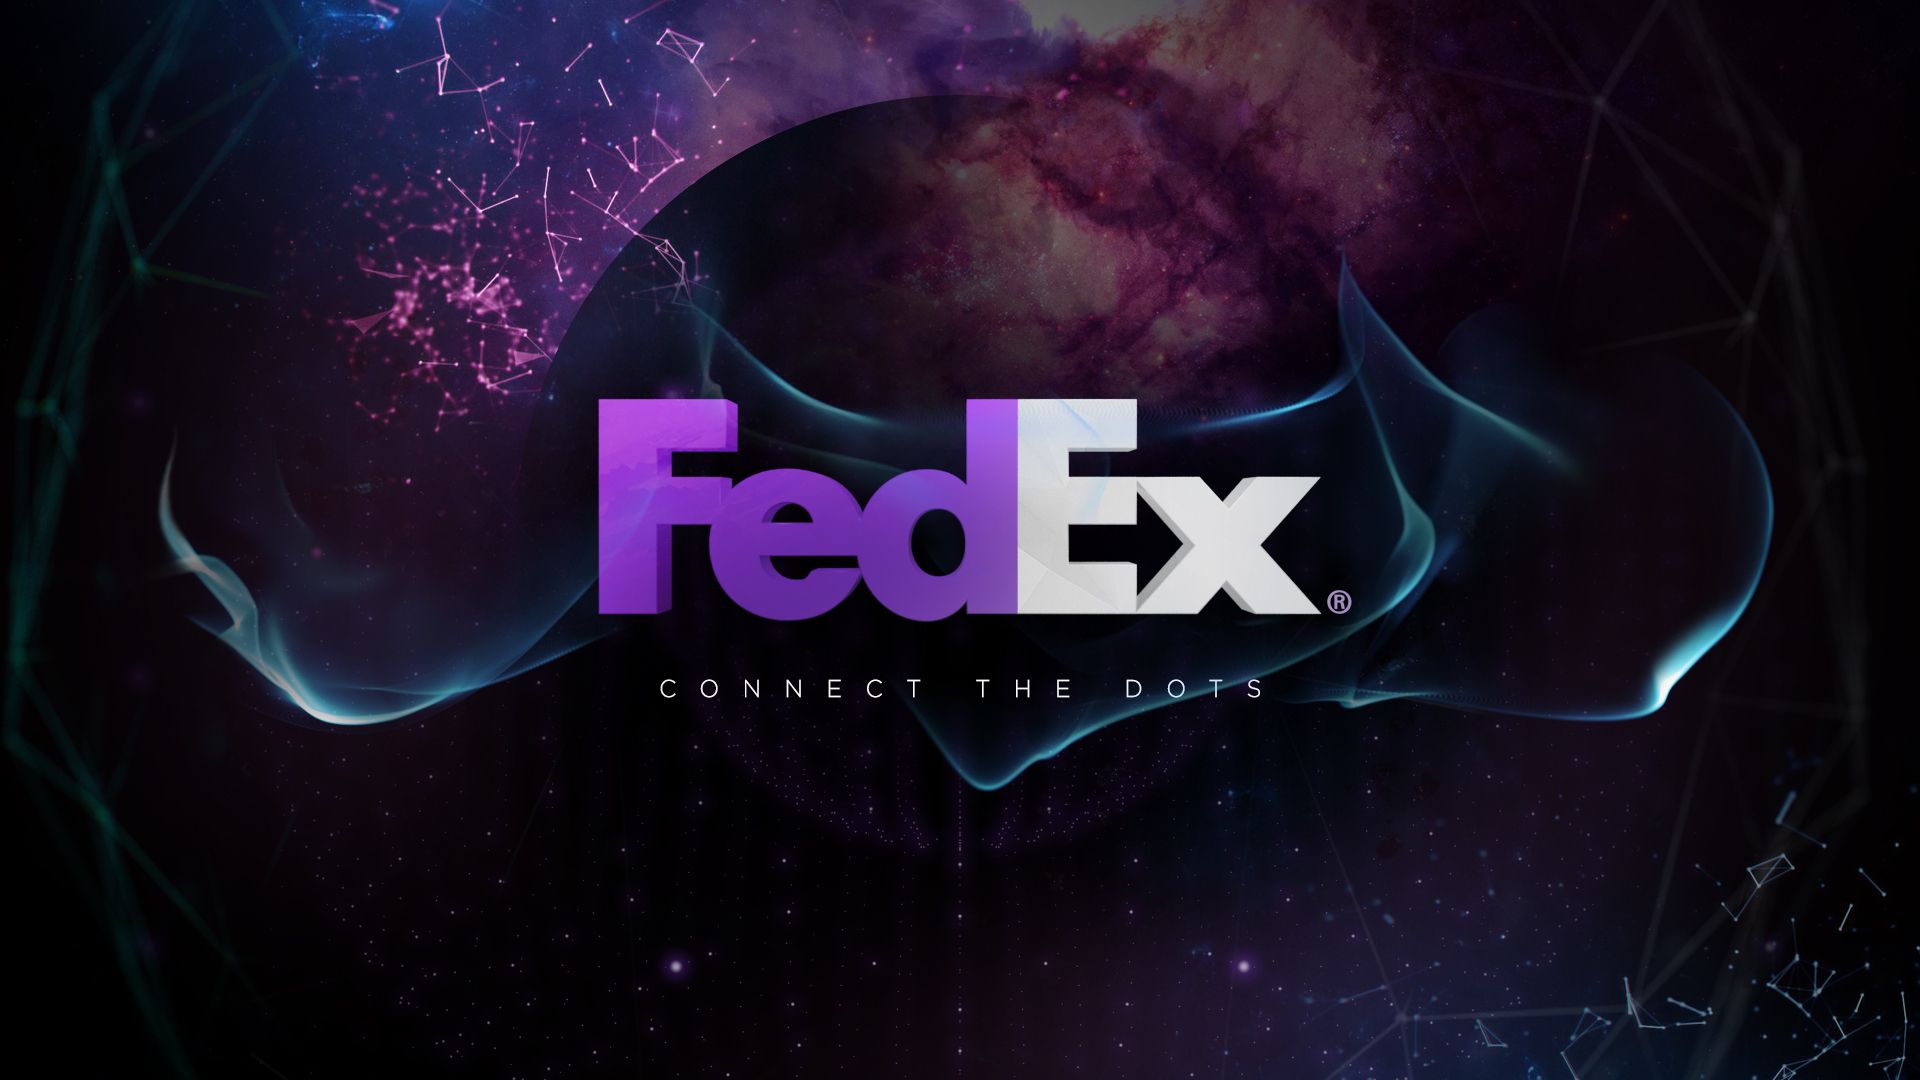 FedEx Desktop Background. FedEx